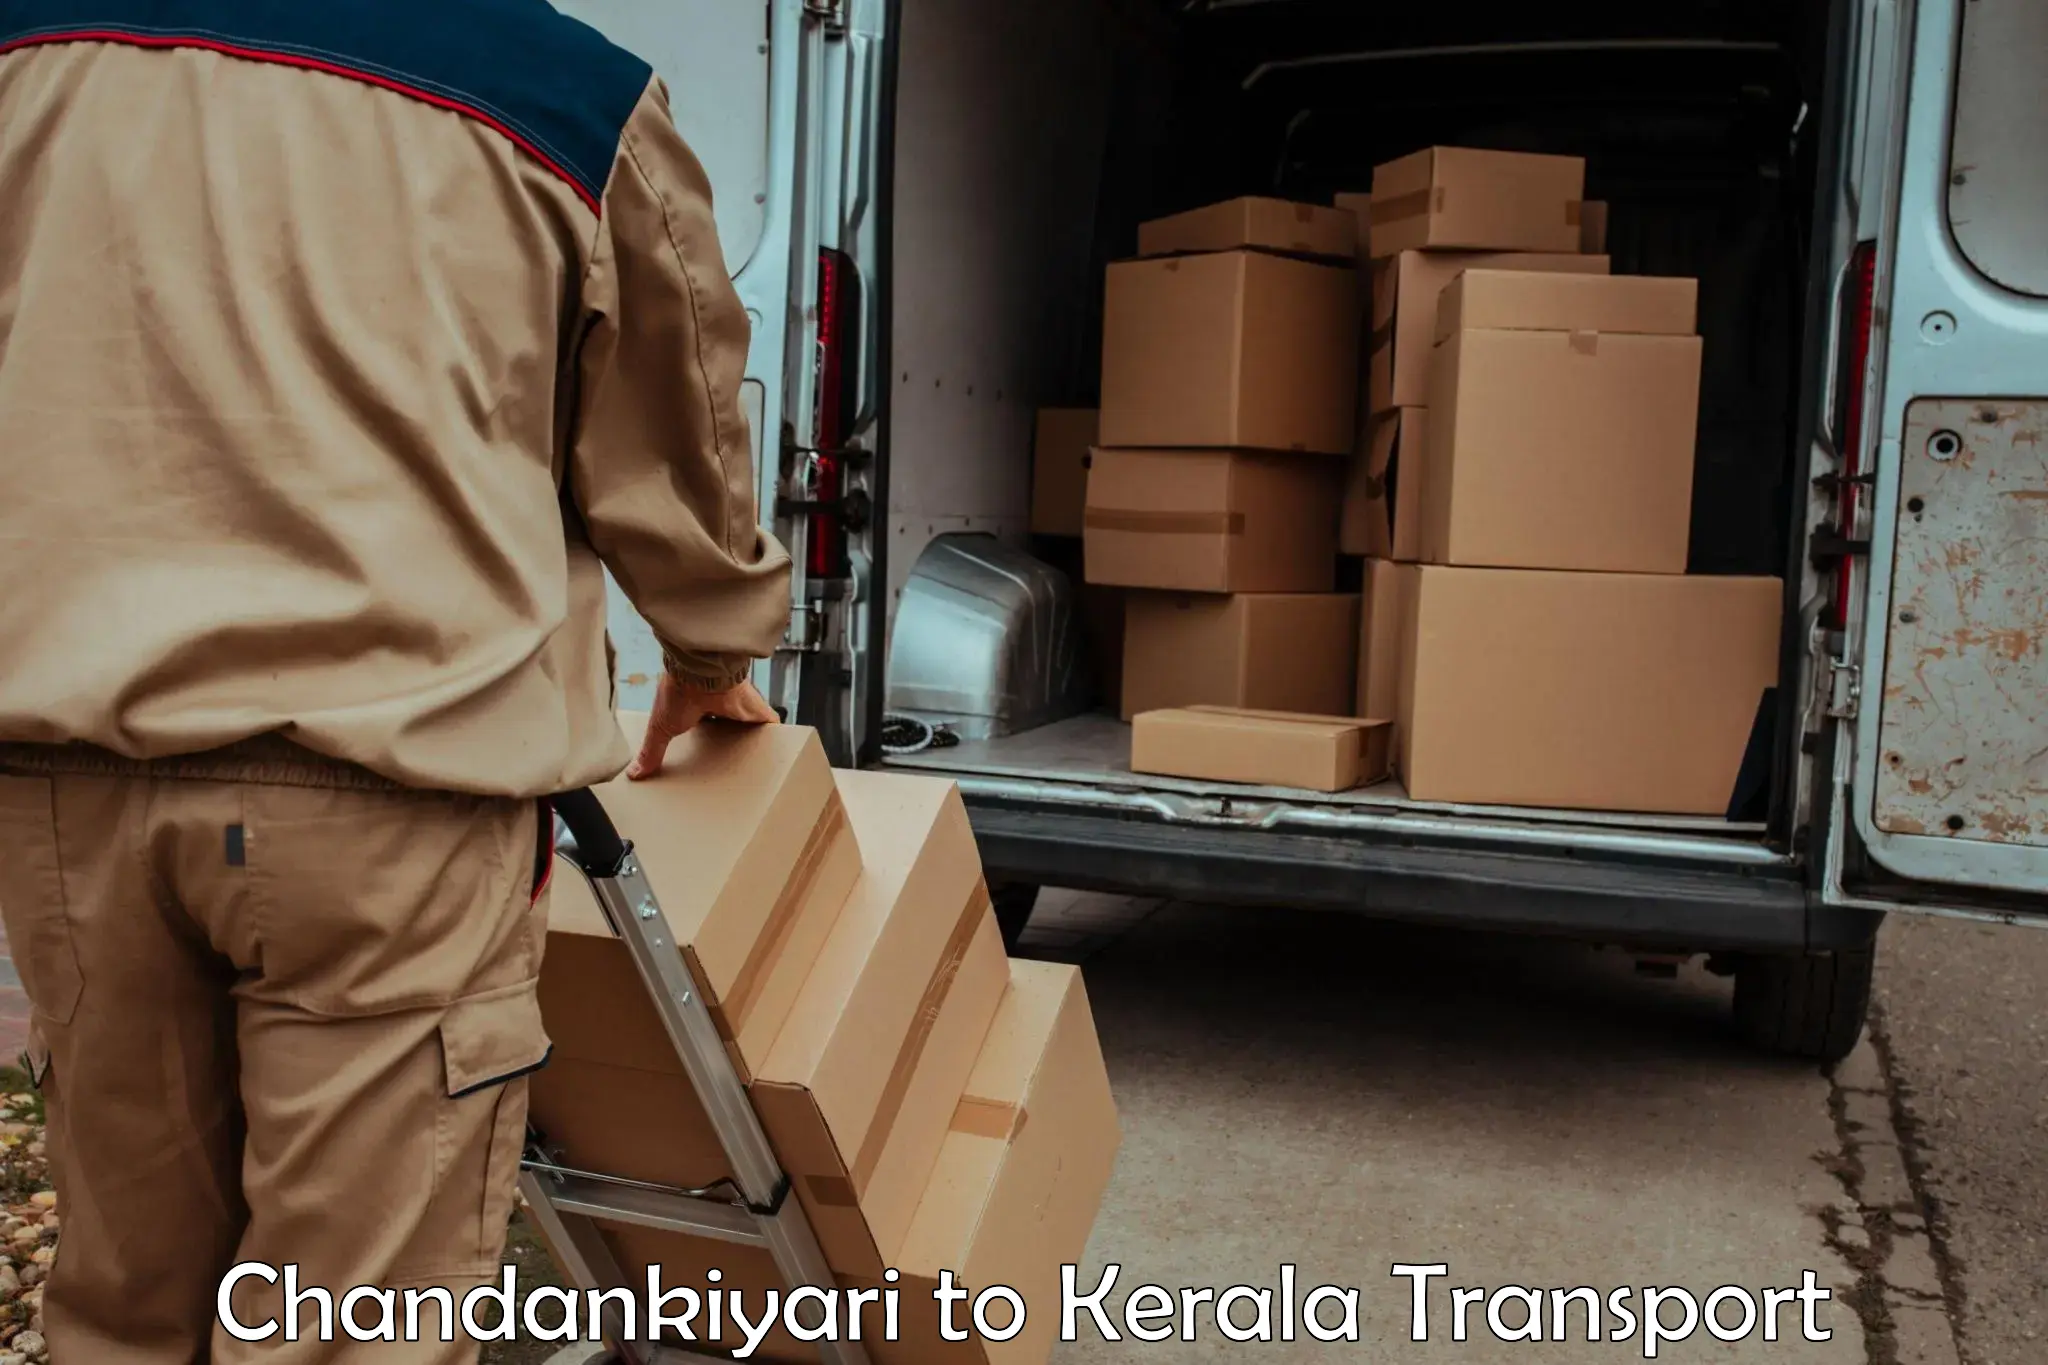 Parcel transport services Chandankiyari to Kerala